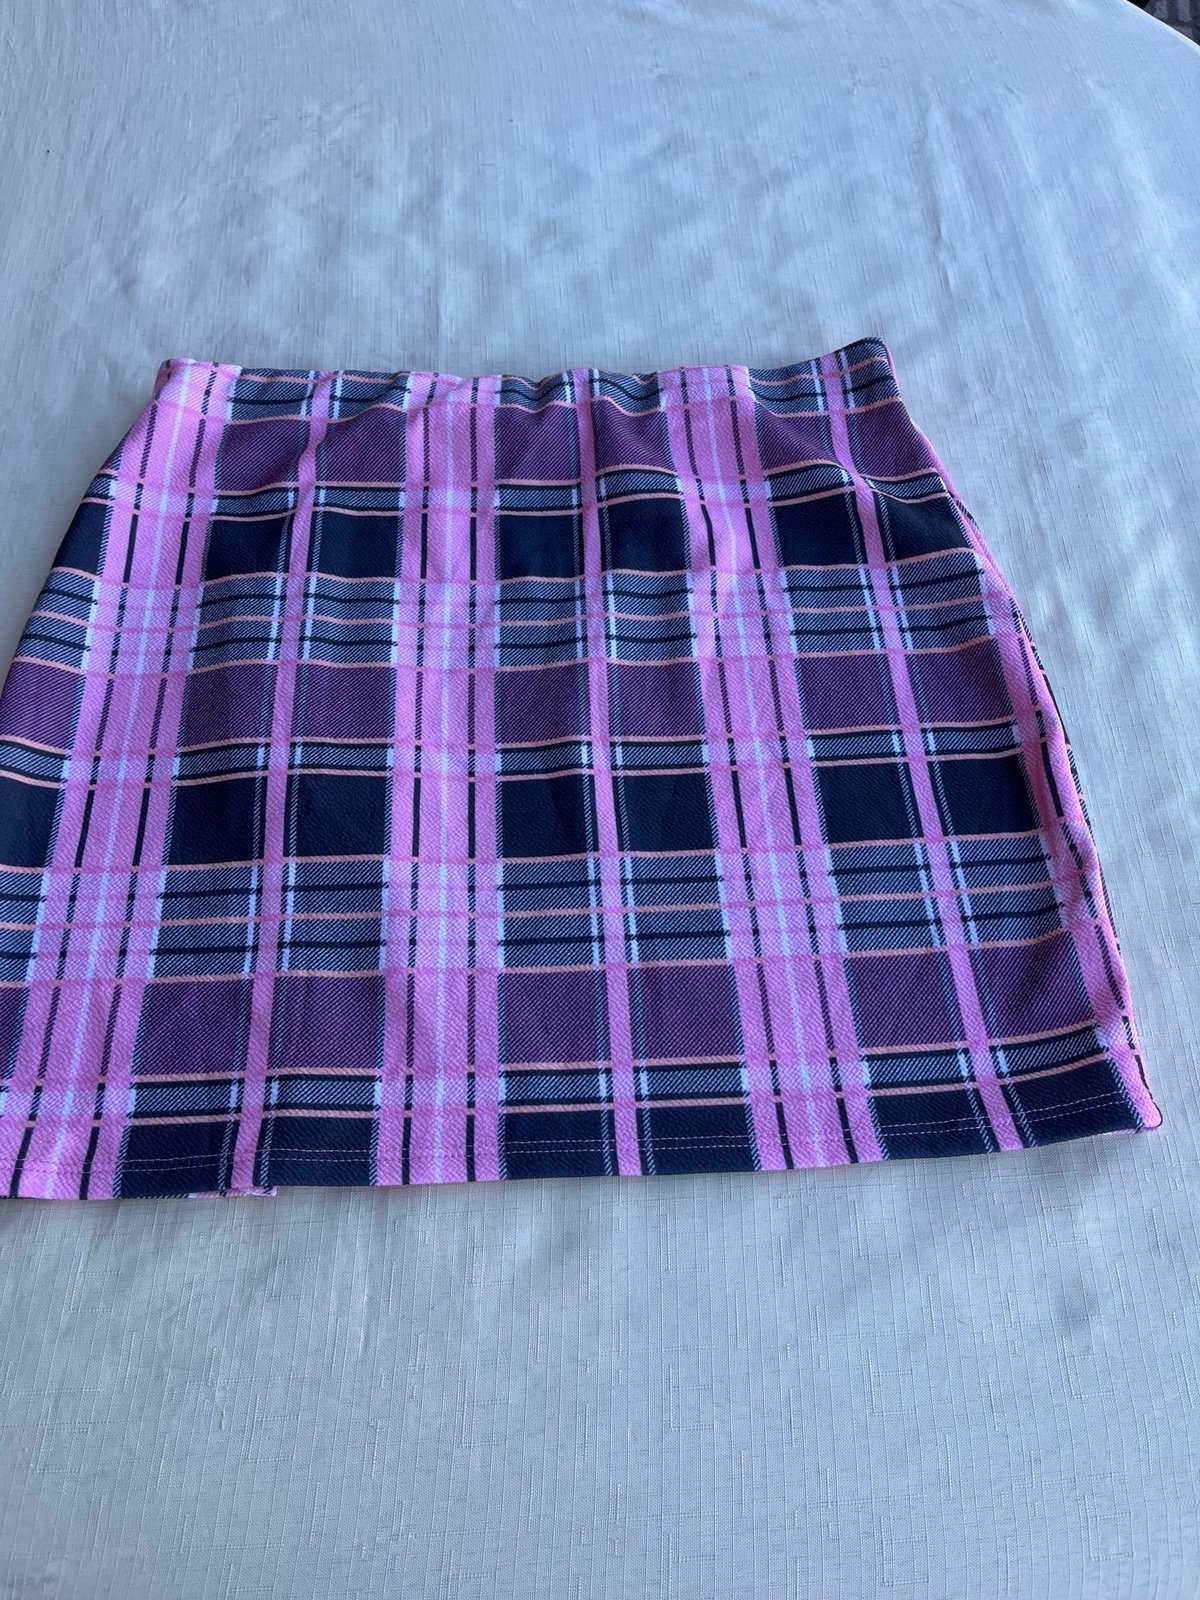 High quality Fashion Nova XL pink plaid mini skirt owCV6FzmO Counter Genuine 